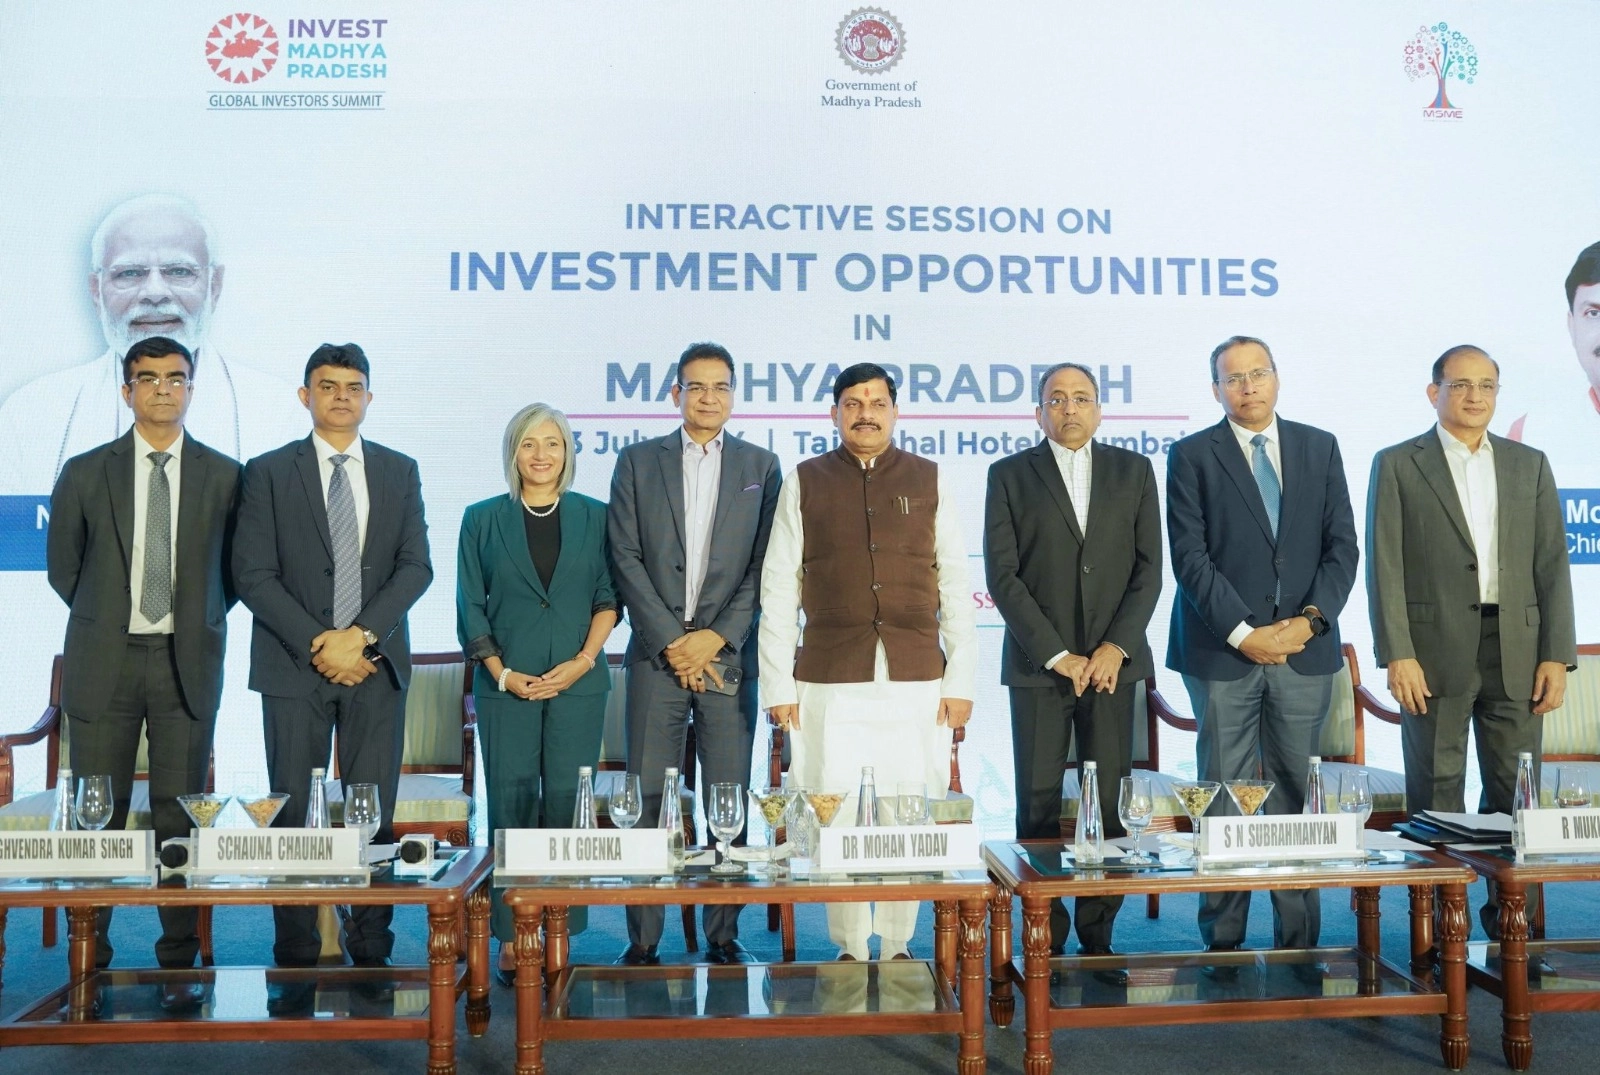 मध्यप्रदेश में निवेश के लिए है अनकूल माहौल, मुंबई में रोड टू GIS-2025 इंटरएक्टिव सेशन में बोले CM डॉ. मोहन यादव - Madhya Pradesh has a favorable environment for investment: CM Dr. Mohan Yadav